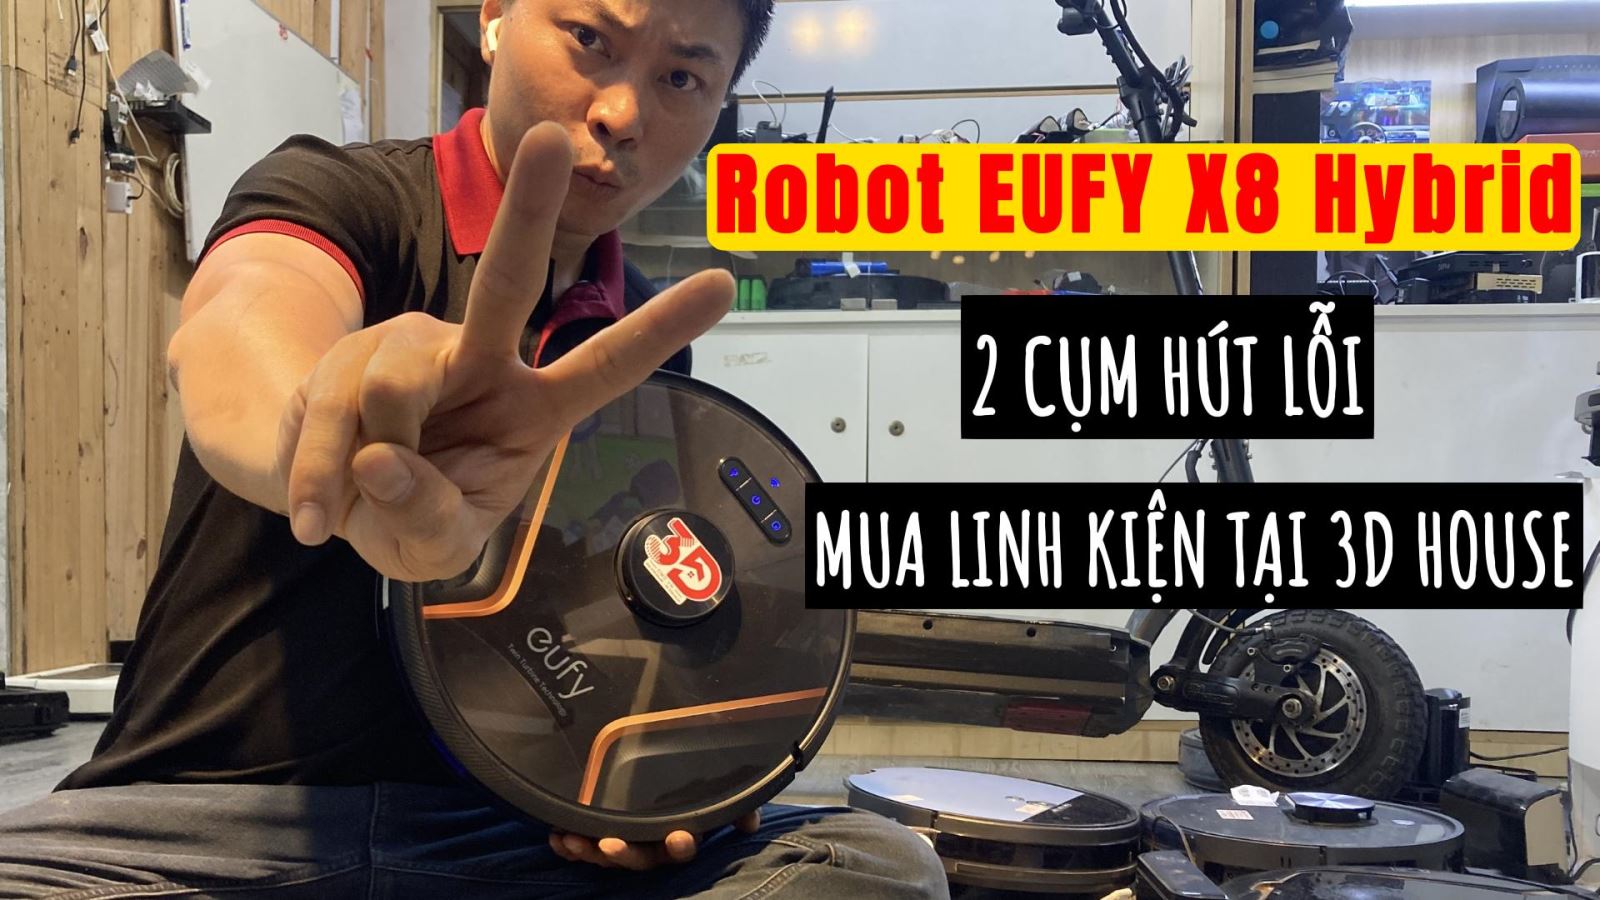 Robot Eufy X8 Hybrid Không Hút